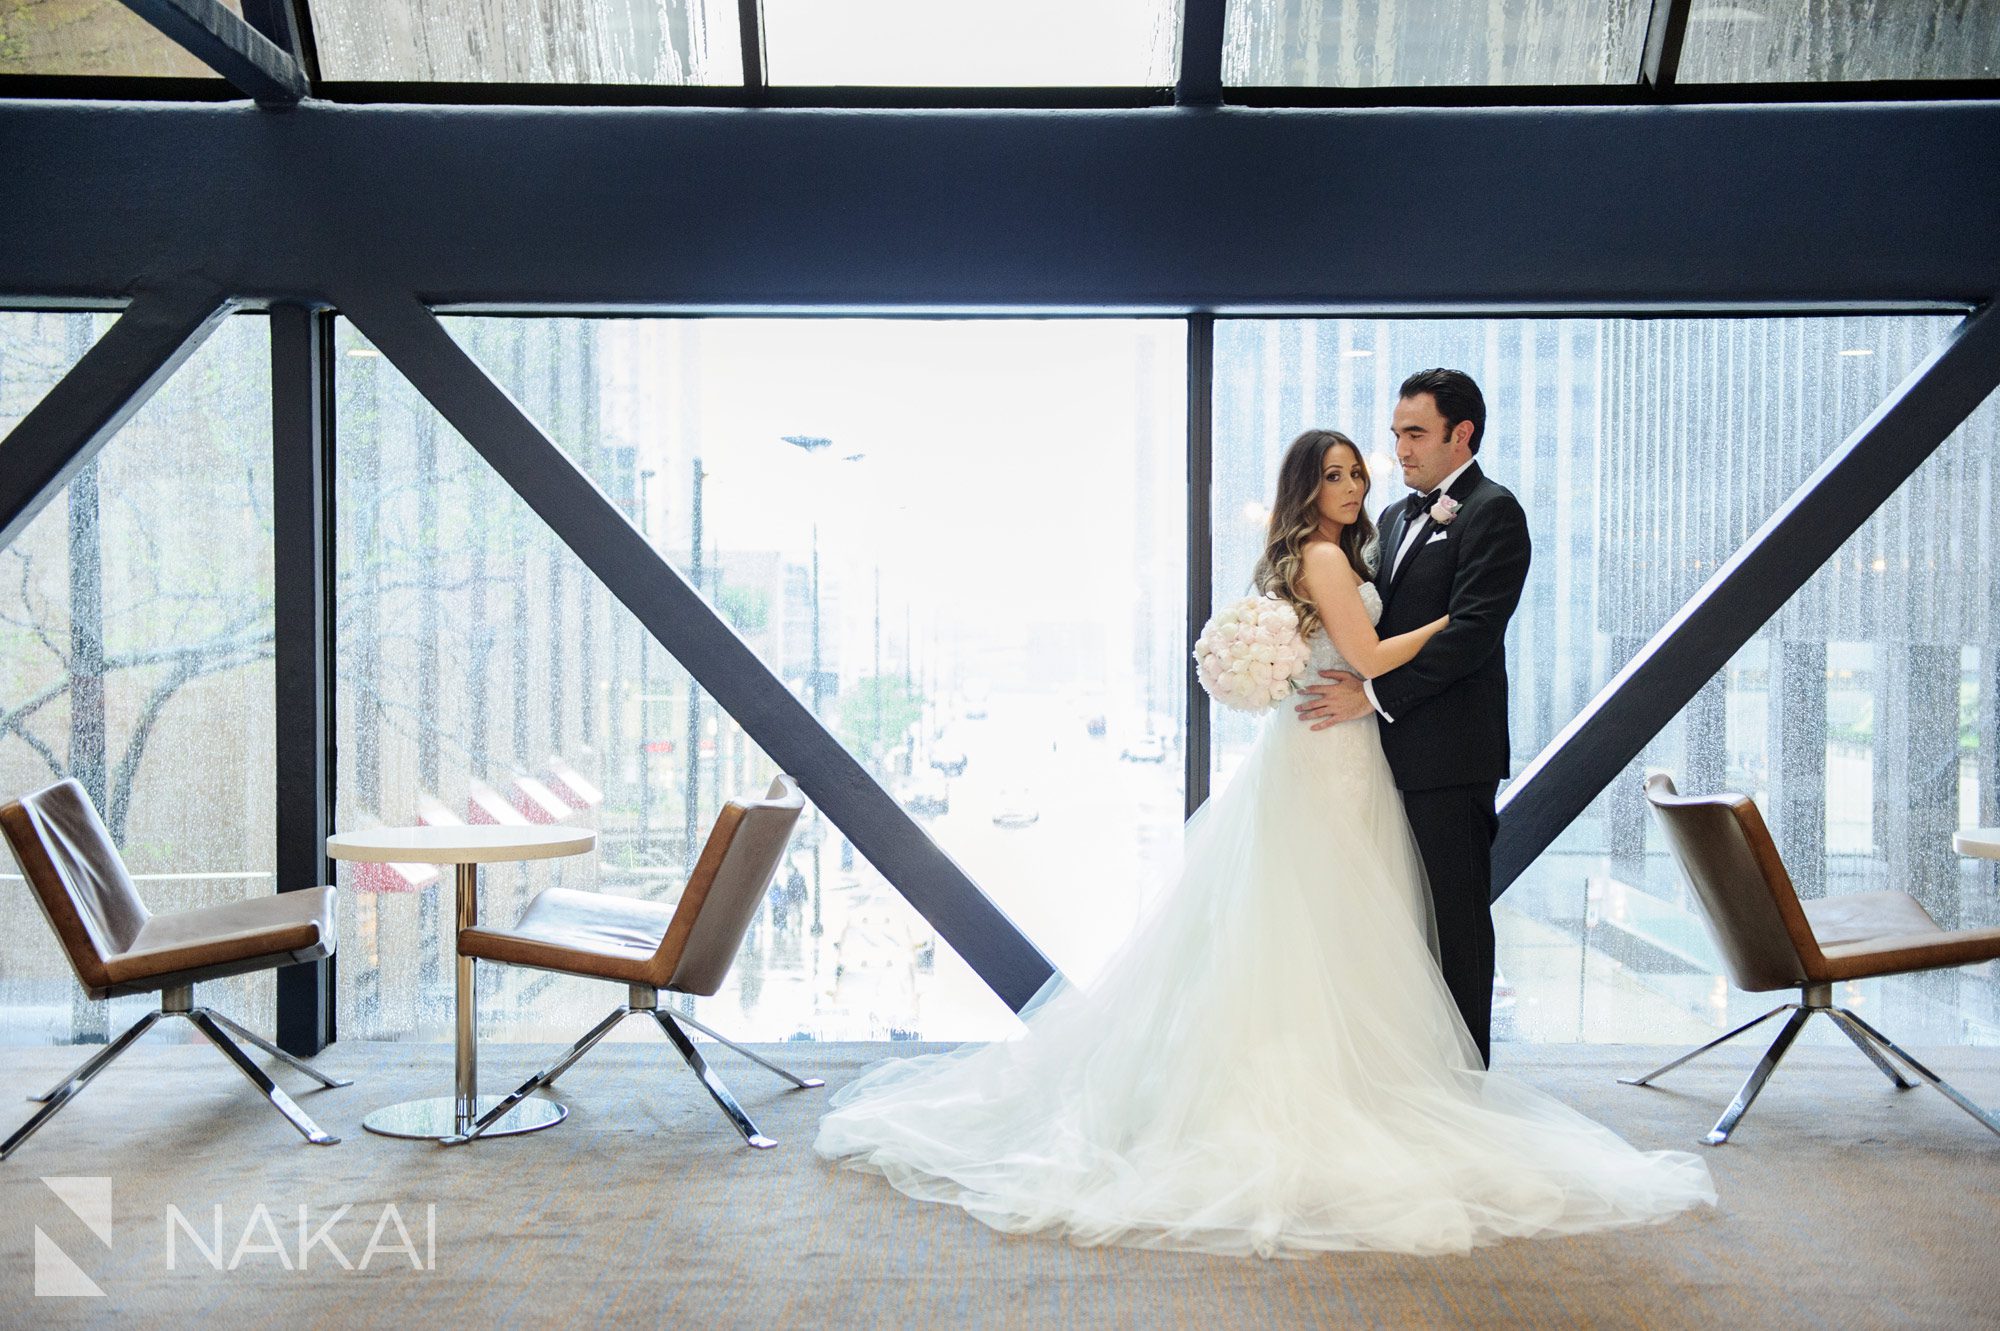 Hyatt chicago regency wedding photographer best photo skyway bride groom